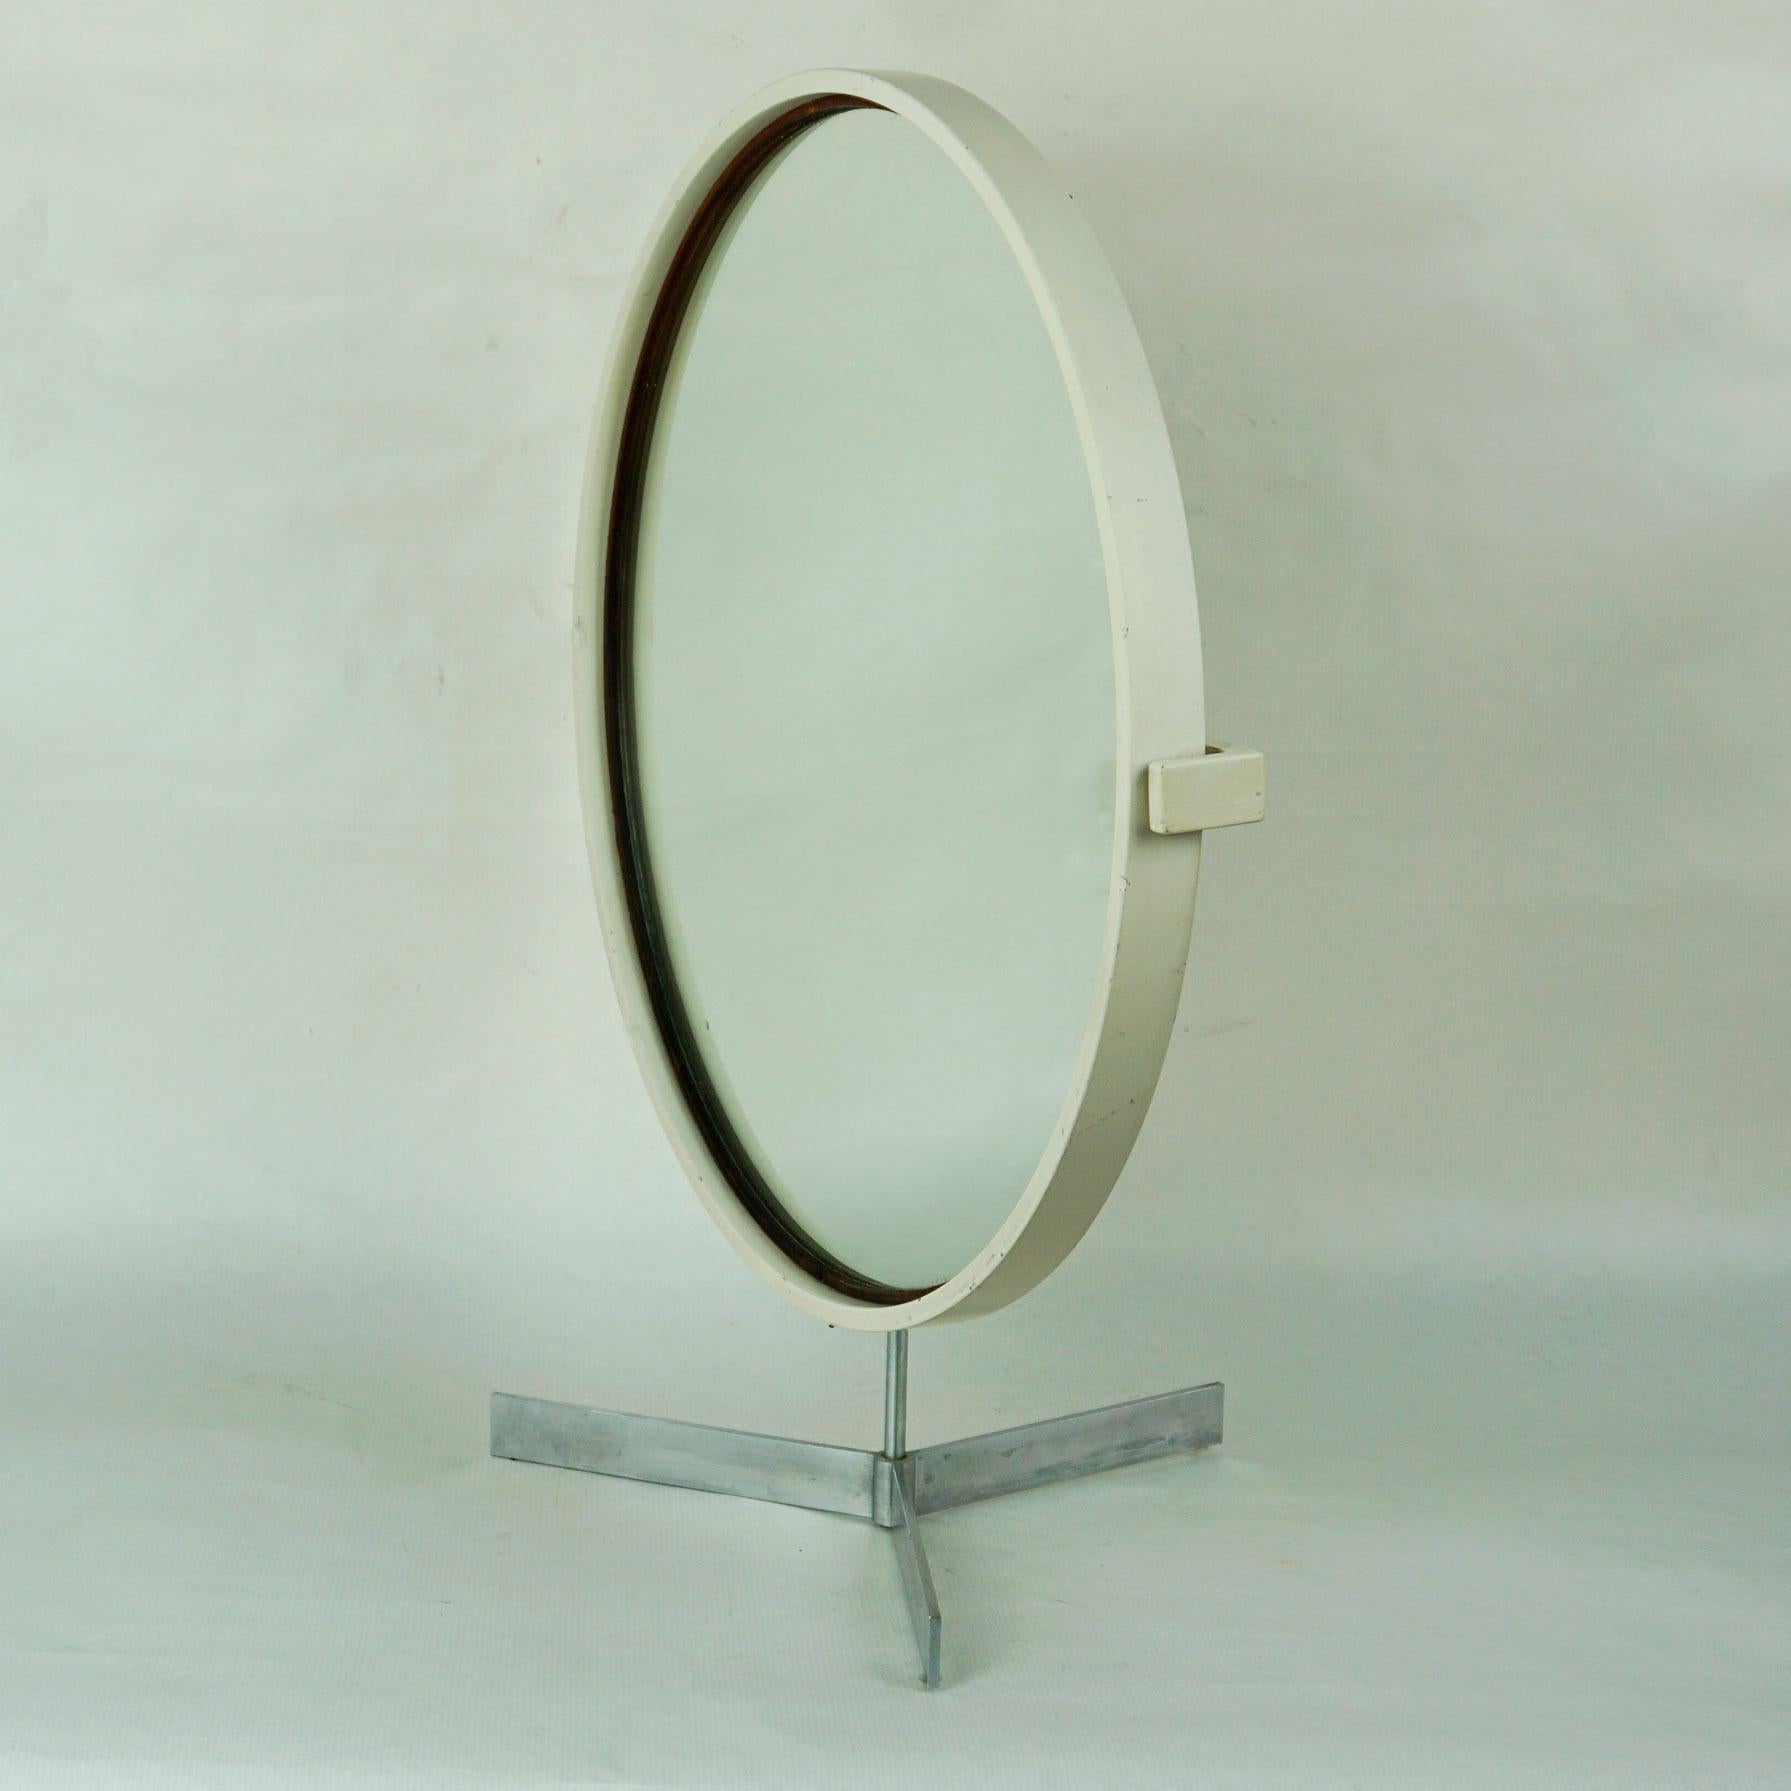 Erstaunlicher Tischspiegel in weiß lackierter, großer Ausführung, entworfen von Uno & Östen Kristiansson für LUXUS Sweden in den 1960er Jahren.
Er verfügt über einen Tripod-Sockel aus rostfreiem Stahl mit einem drehbaren runden Holzspiegel. Auf der